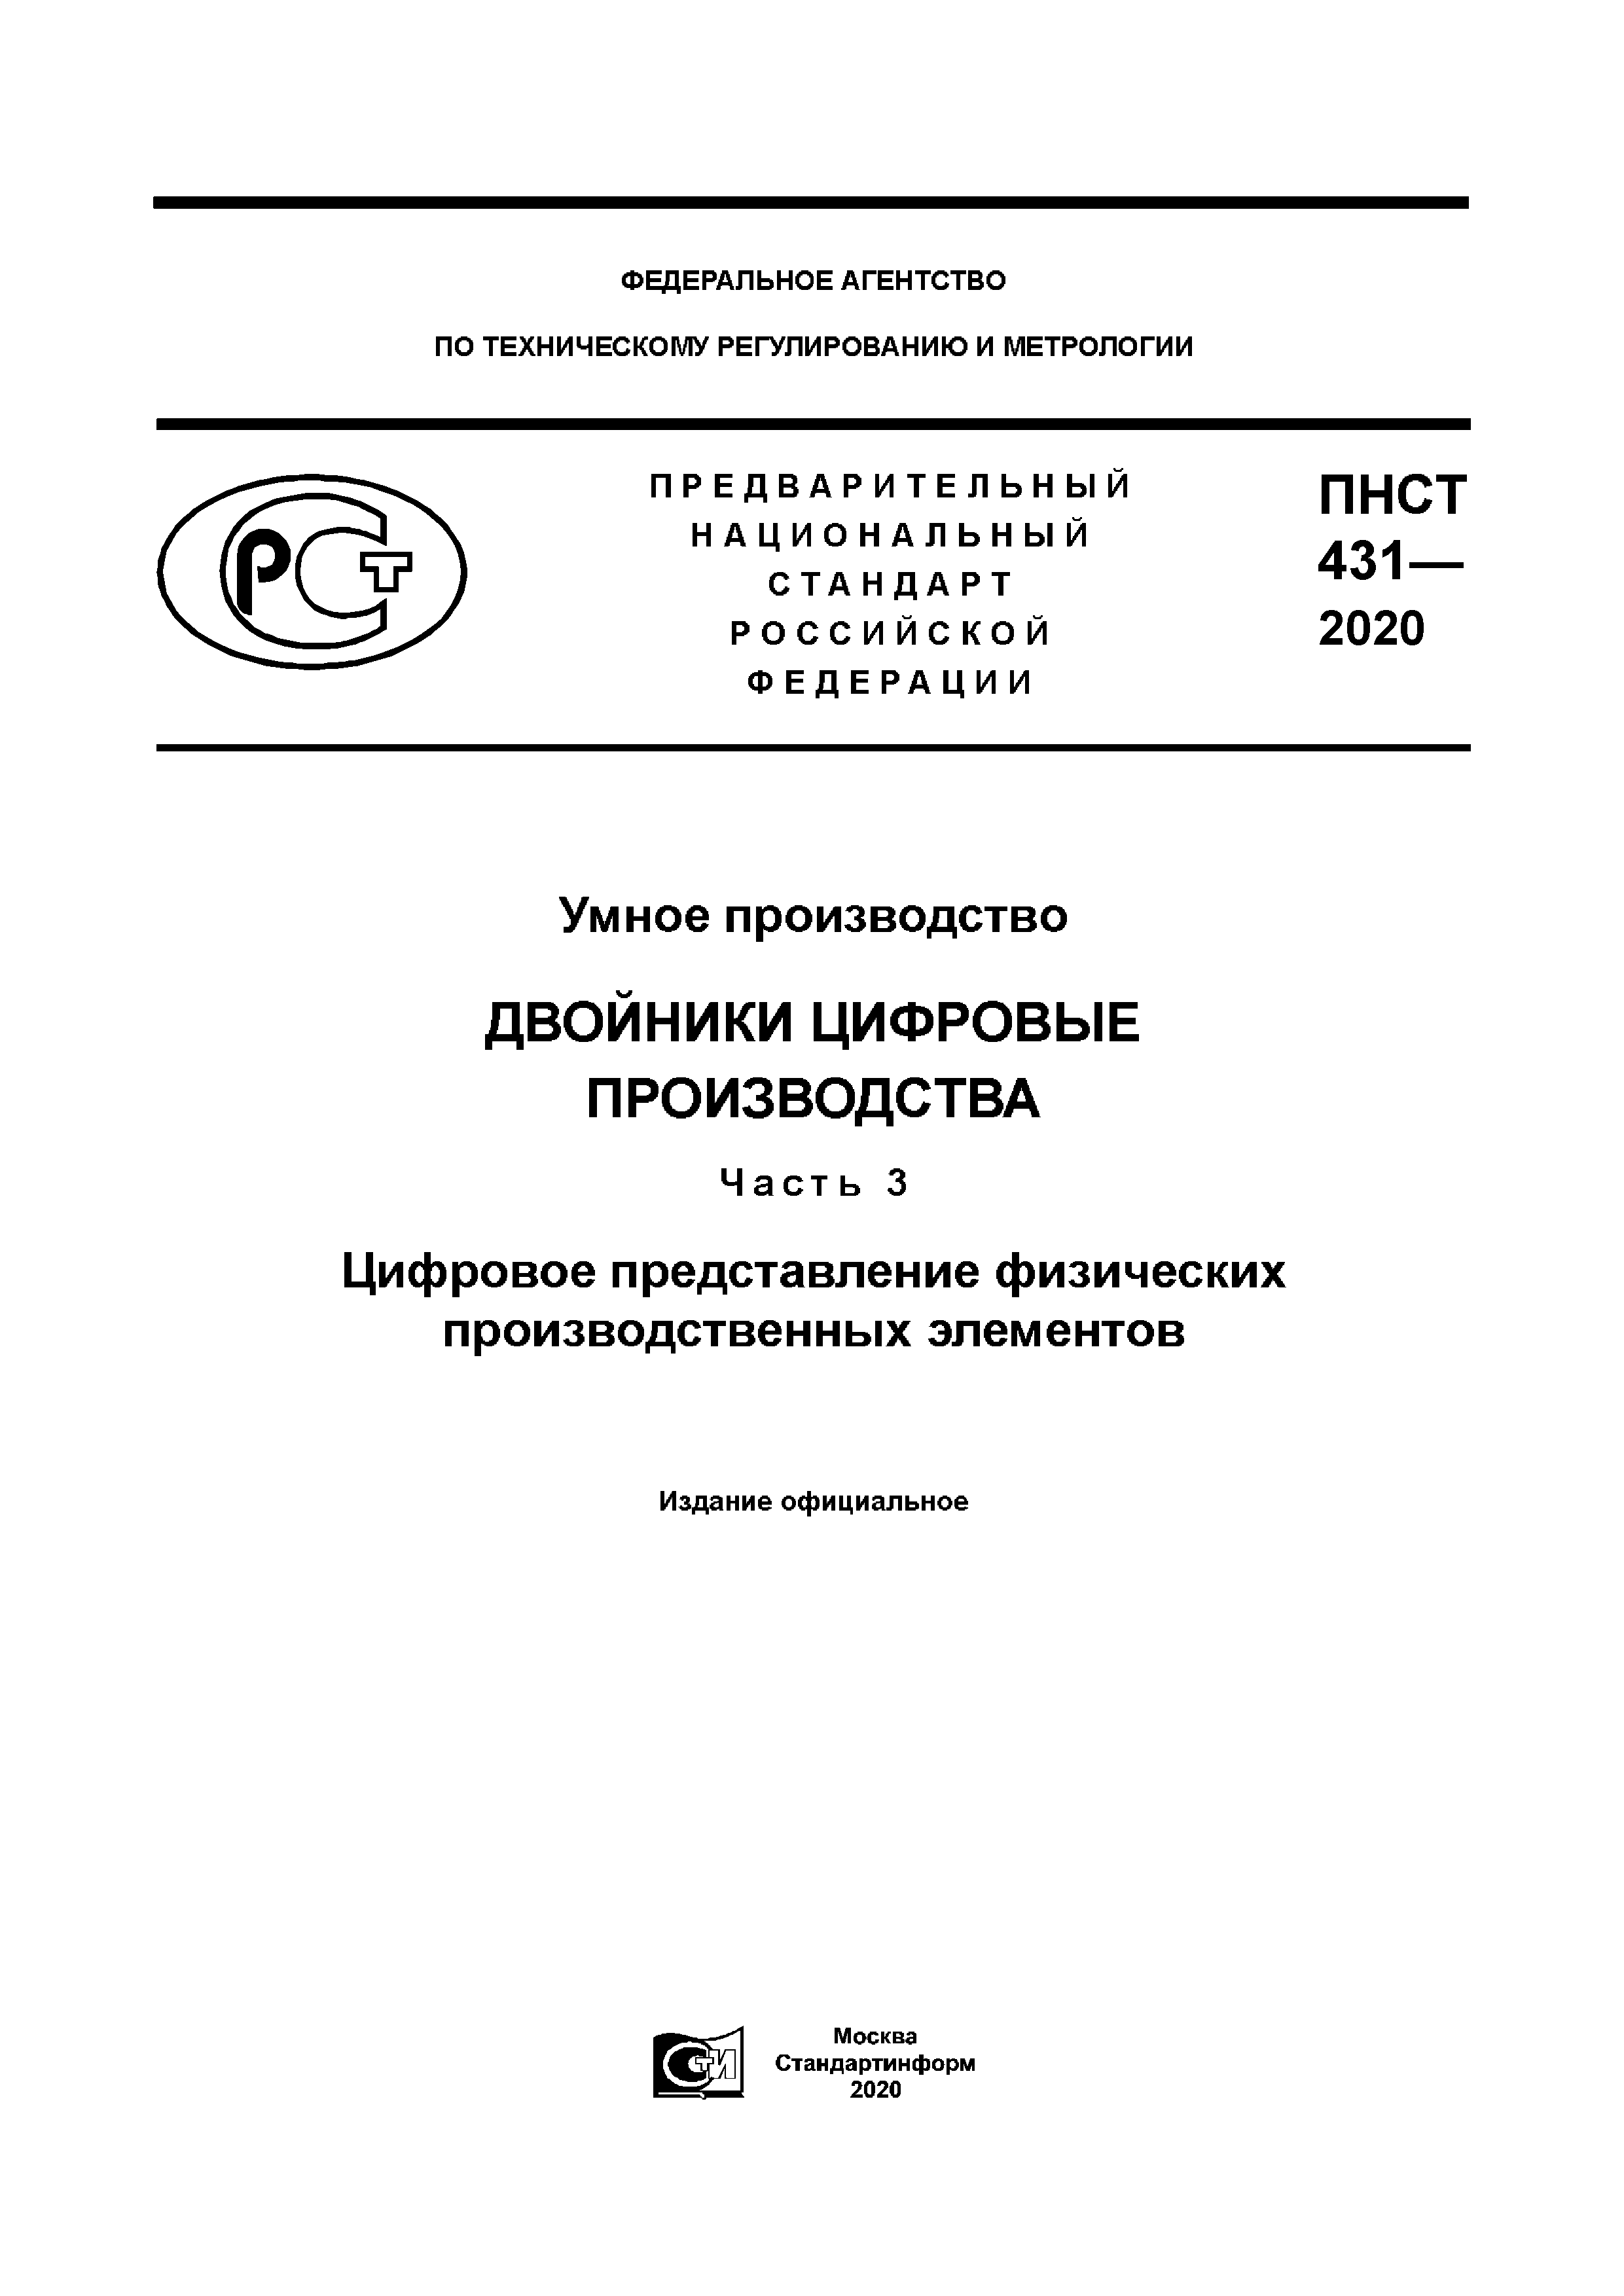 ПНСТ 431-2020